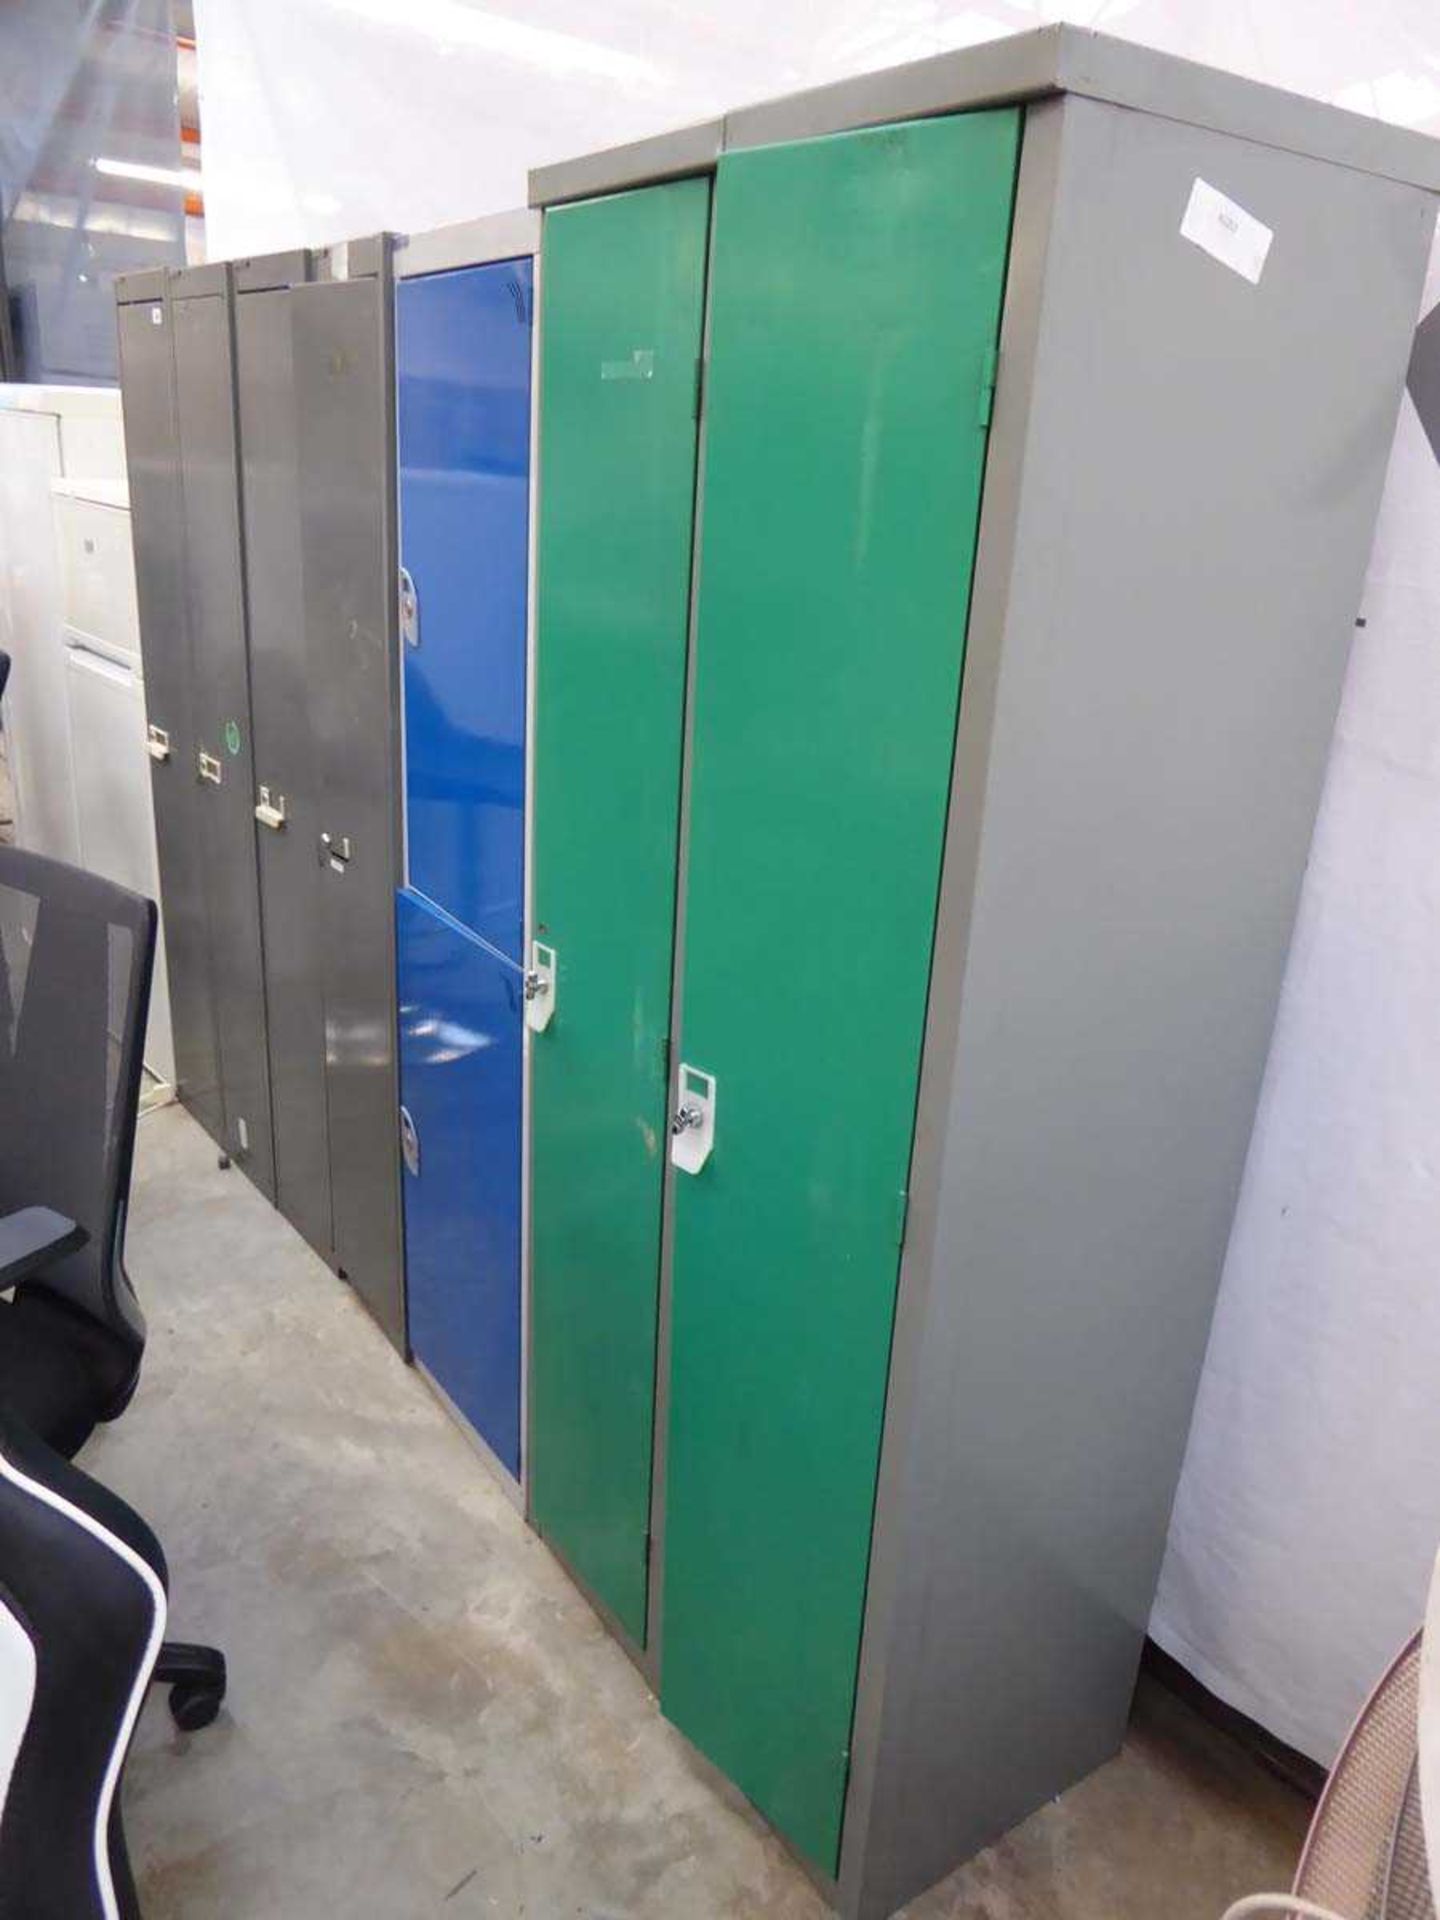 4 Bisley single door lockers with 3 other unbranded single door lockers